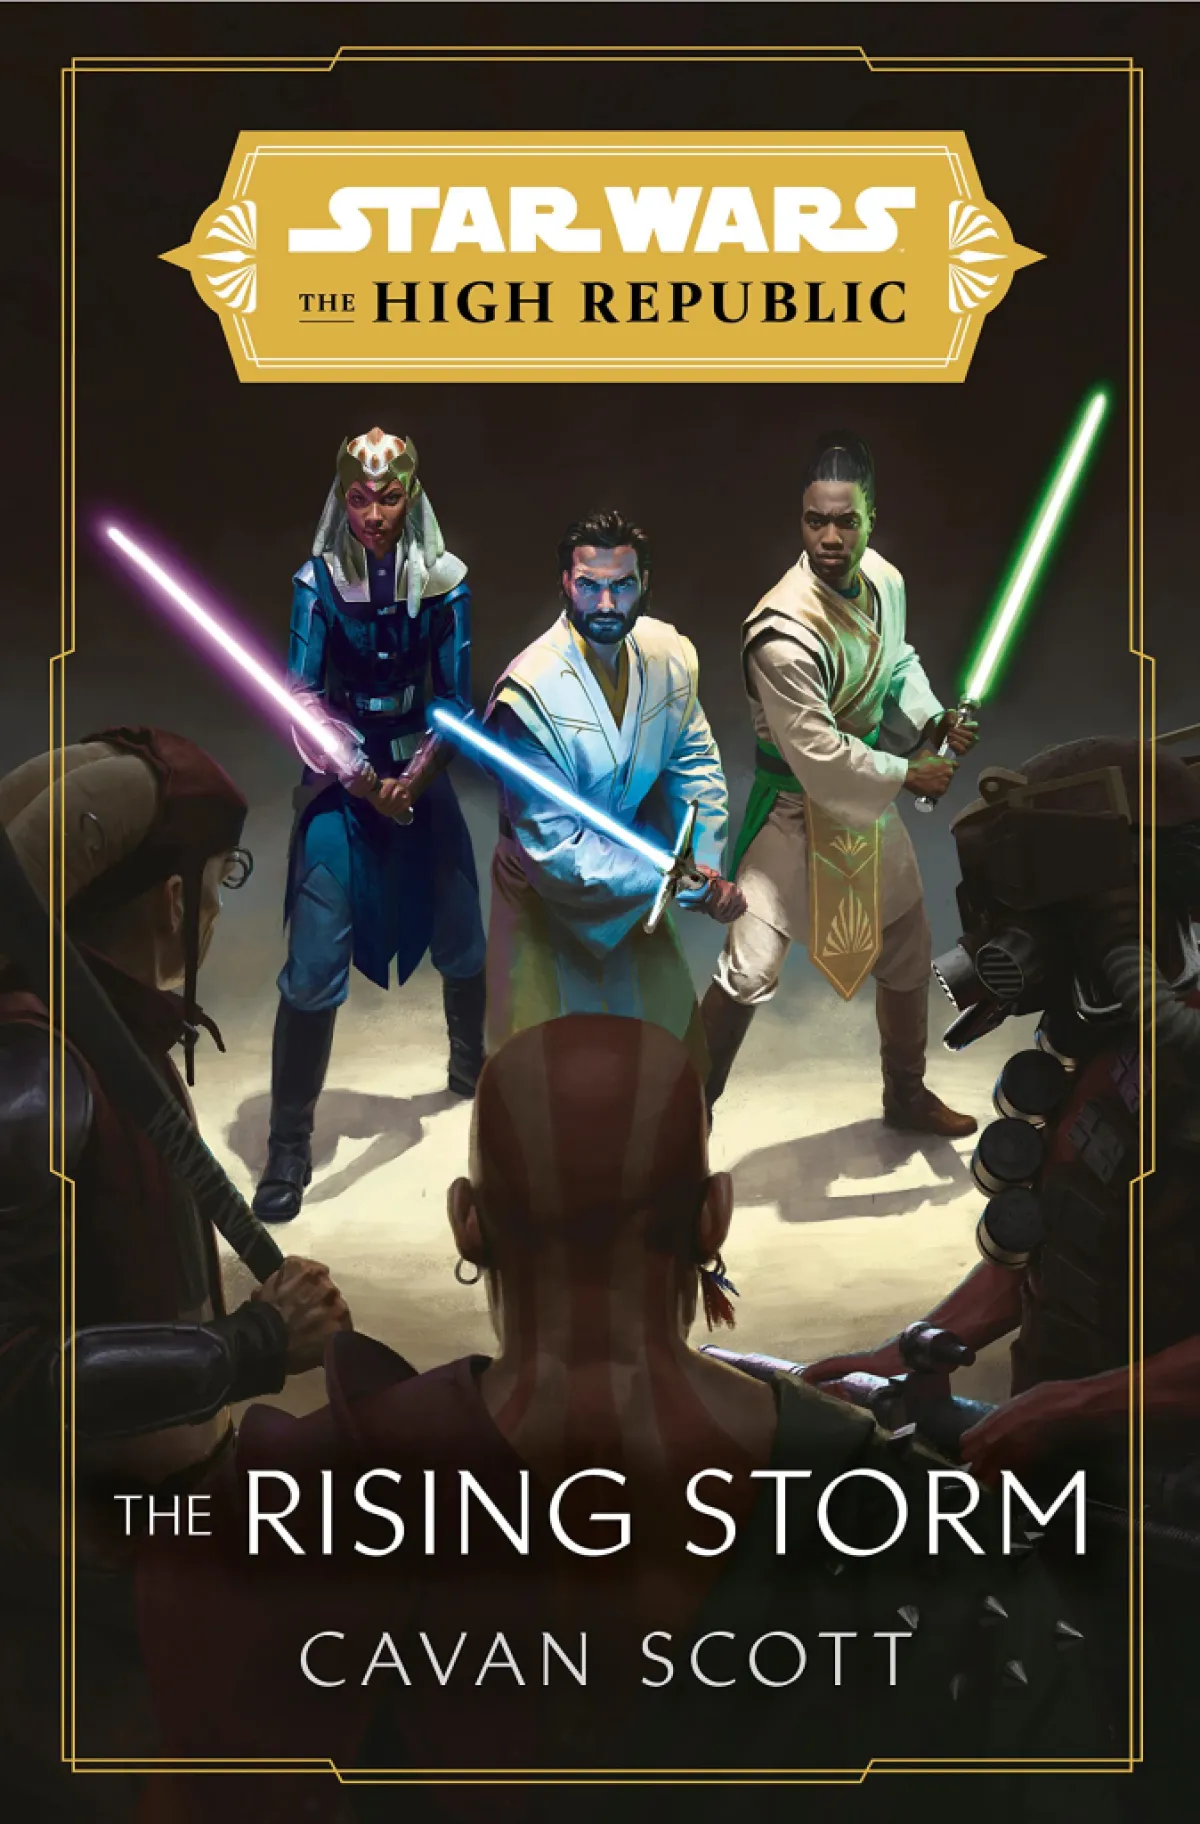 Portada de La tormenta creciente.  Esta imagen es parte de un artículo sobre el orden de lectura de todos los libros de Star Wars: The High Republic. 